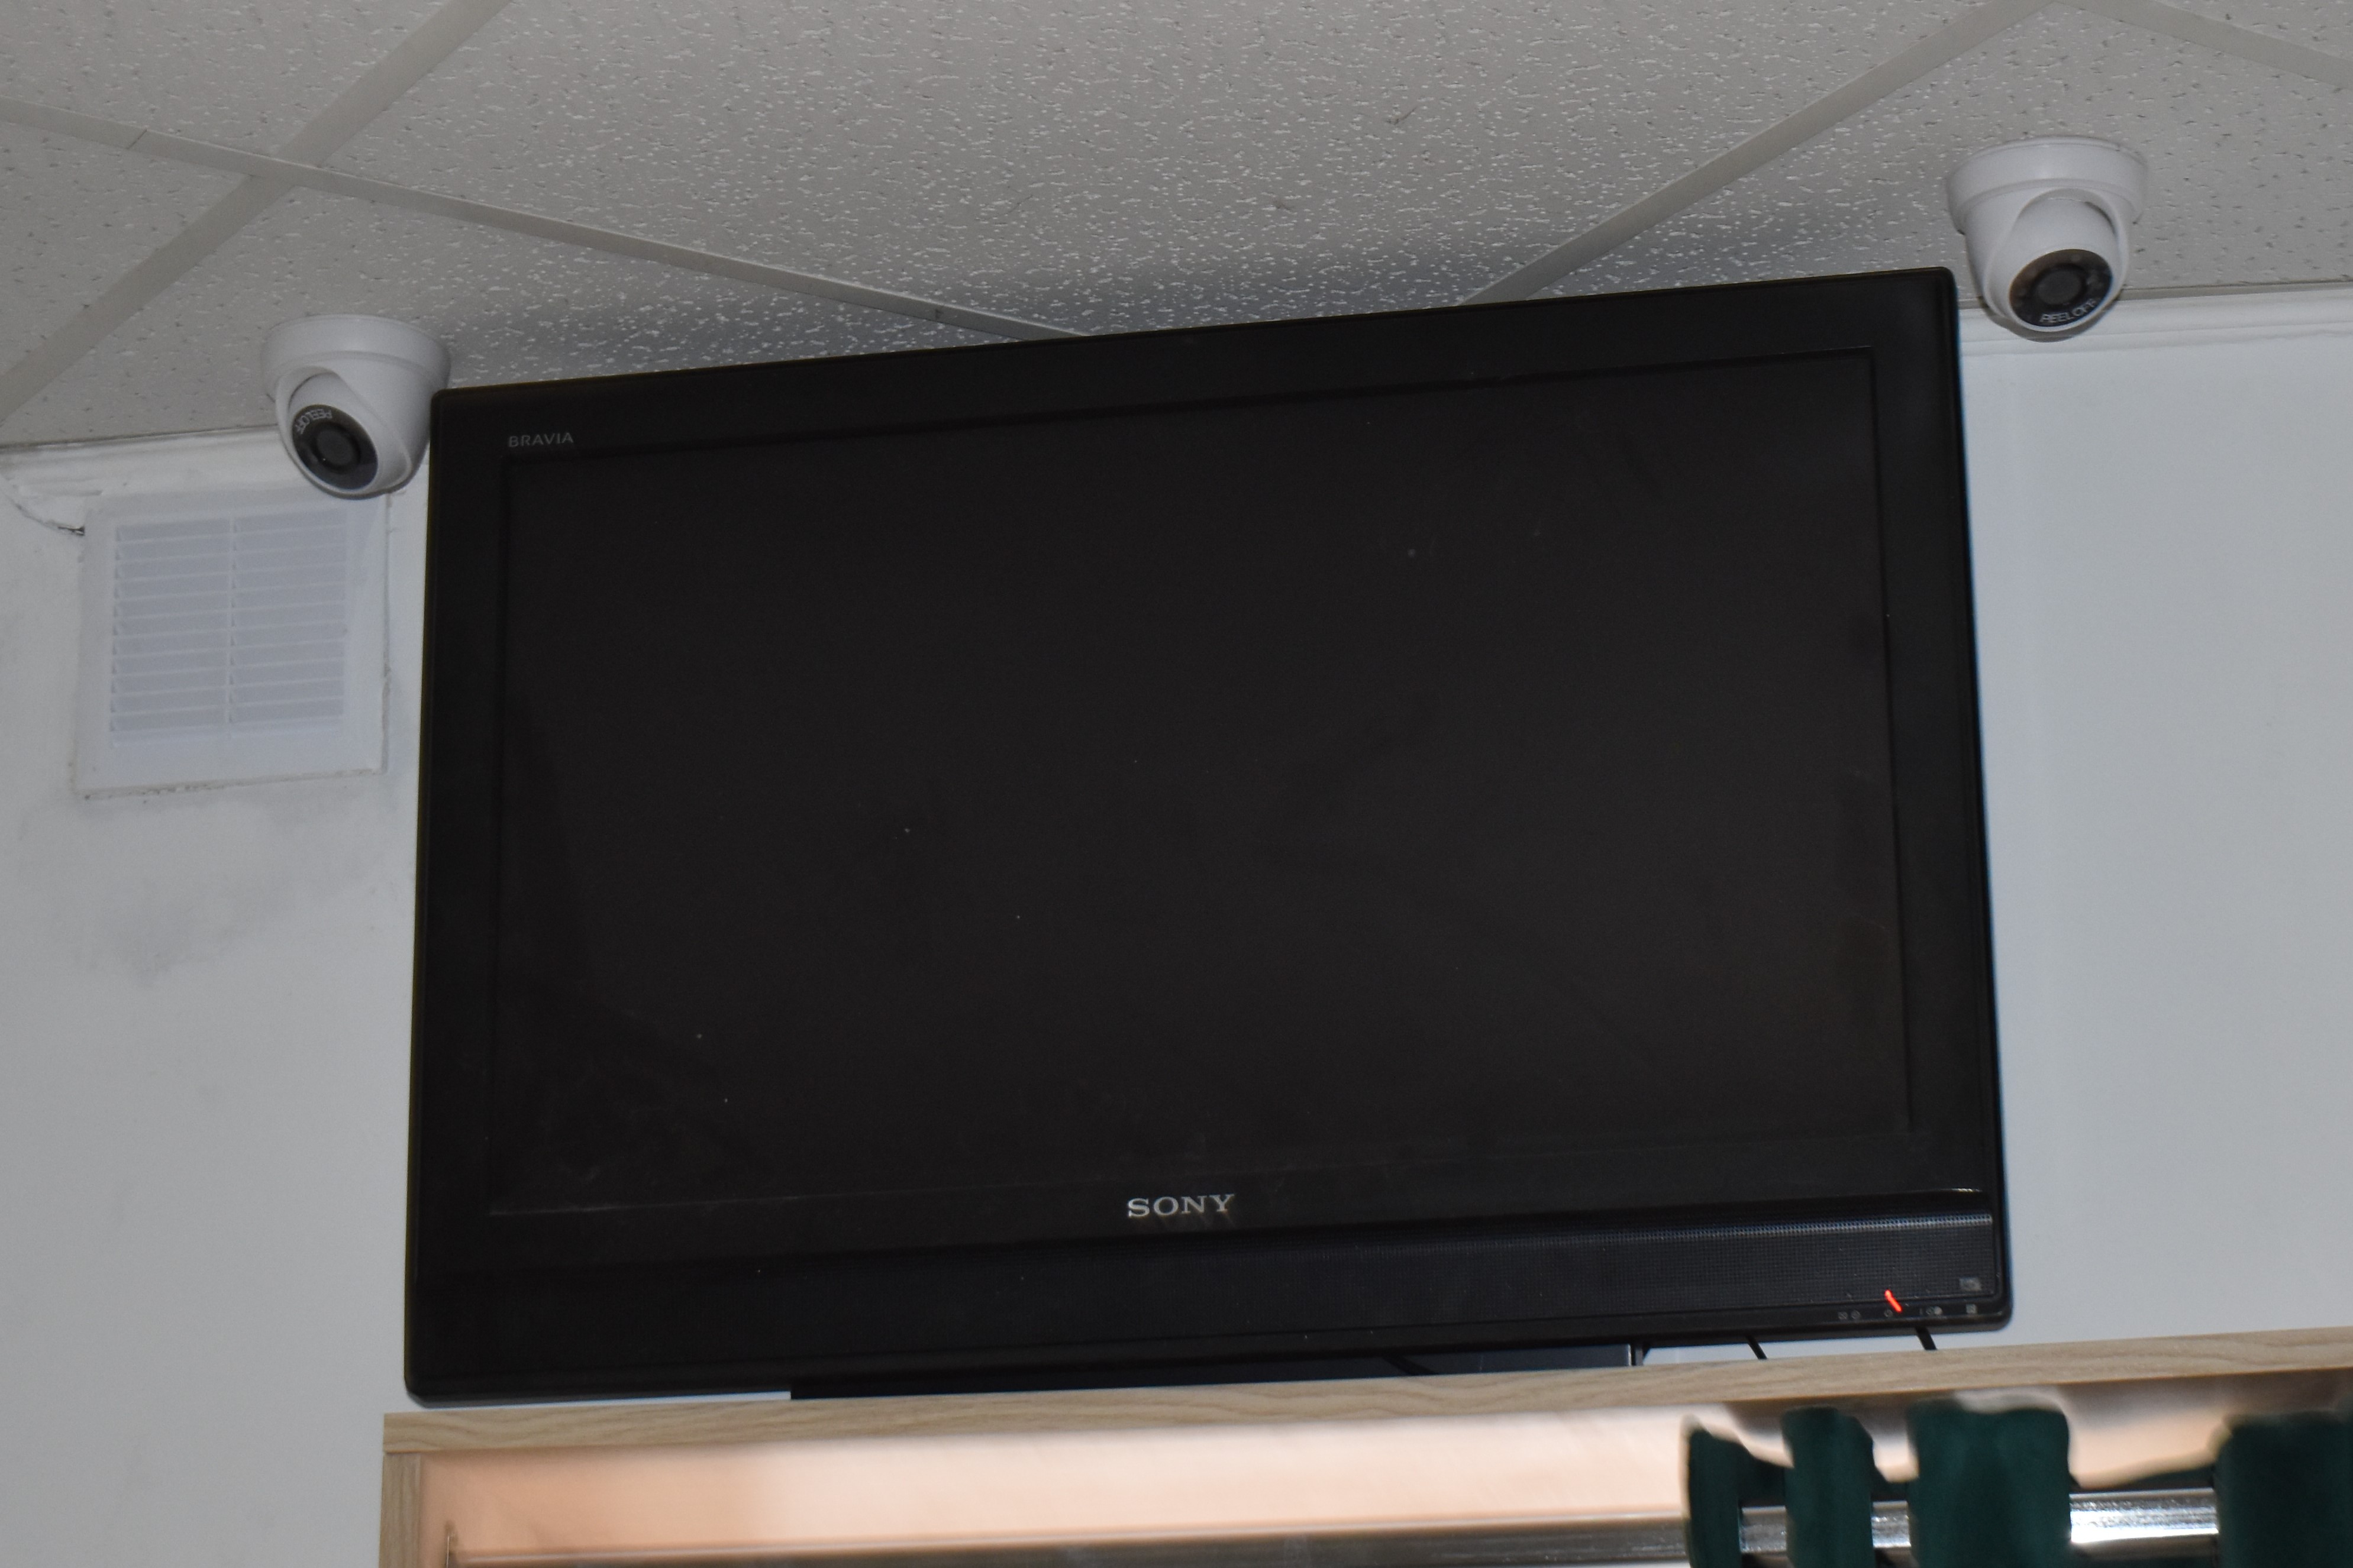 Telewizor zawieszony pod sufitem nad wejściem. Po obu stronach kamery monitoringu.